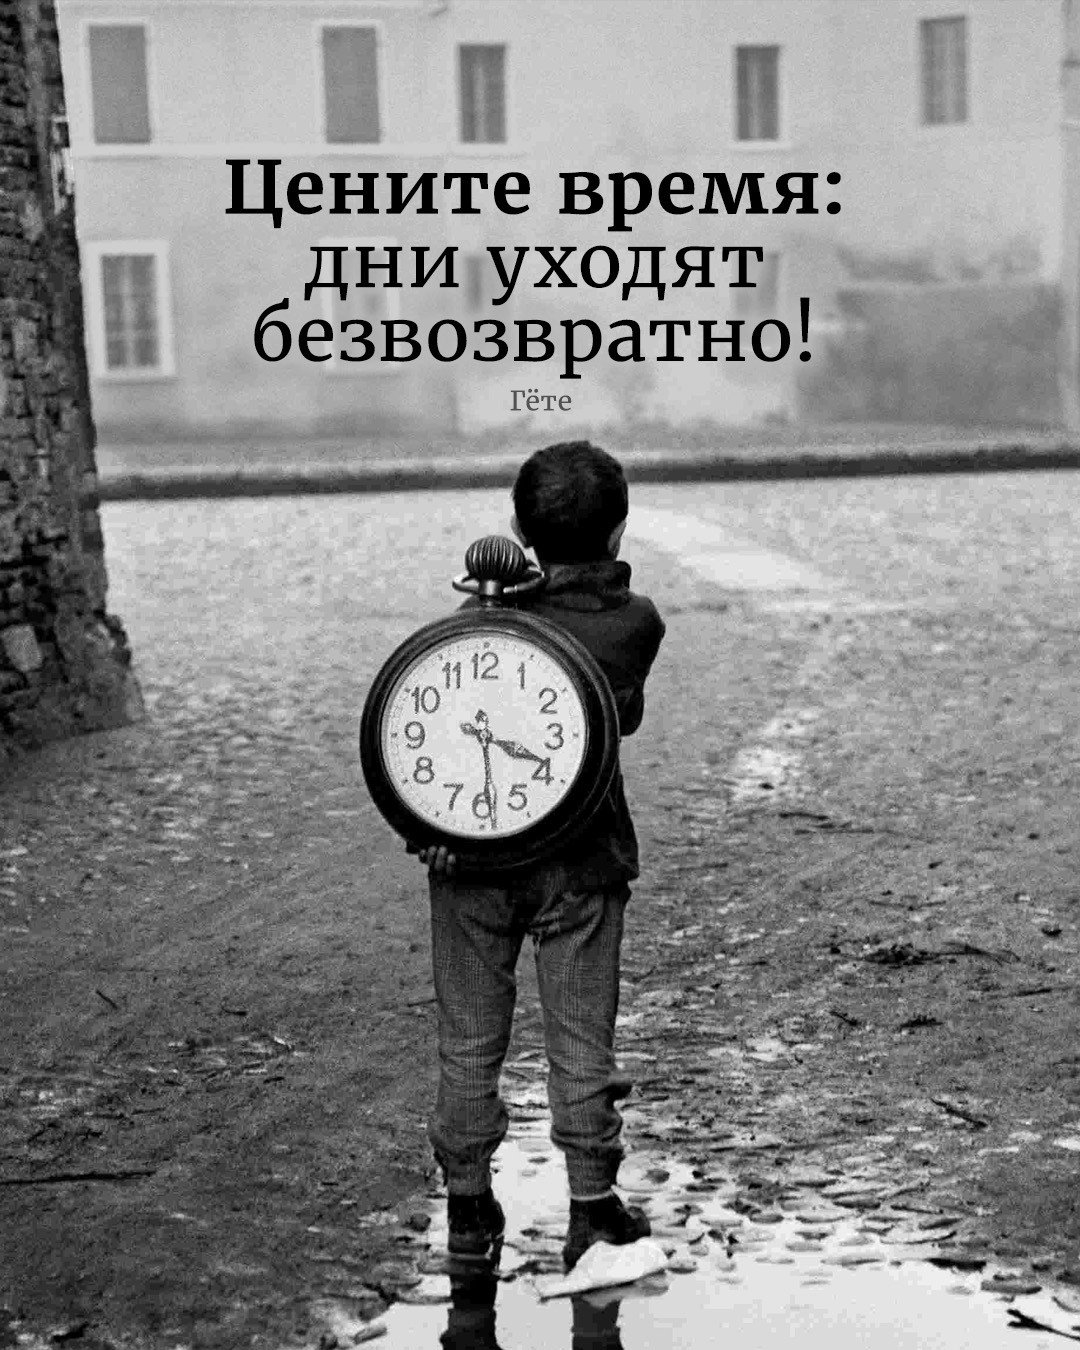 Про уходящее время. Цените время. Дорожите временем. А время уходит. Цитаты про время.